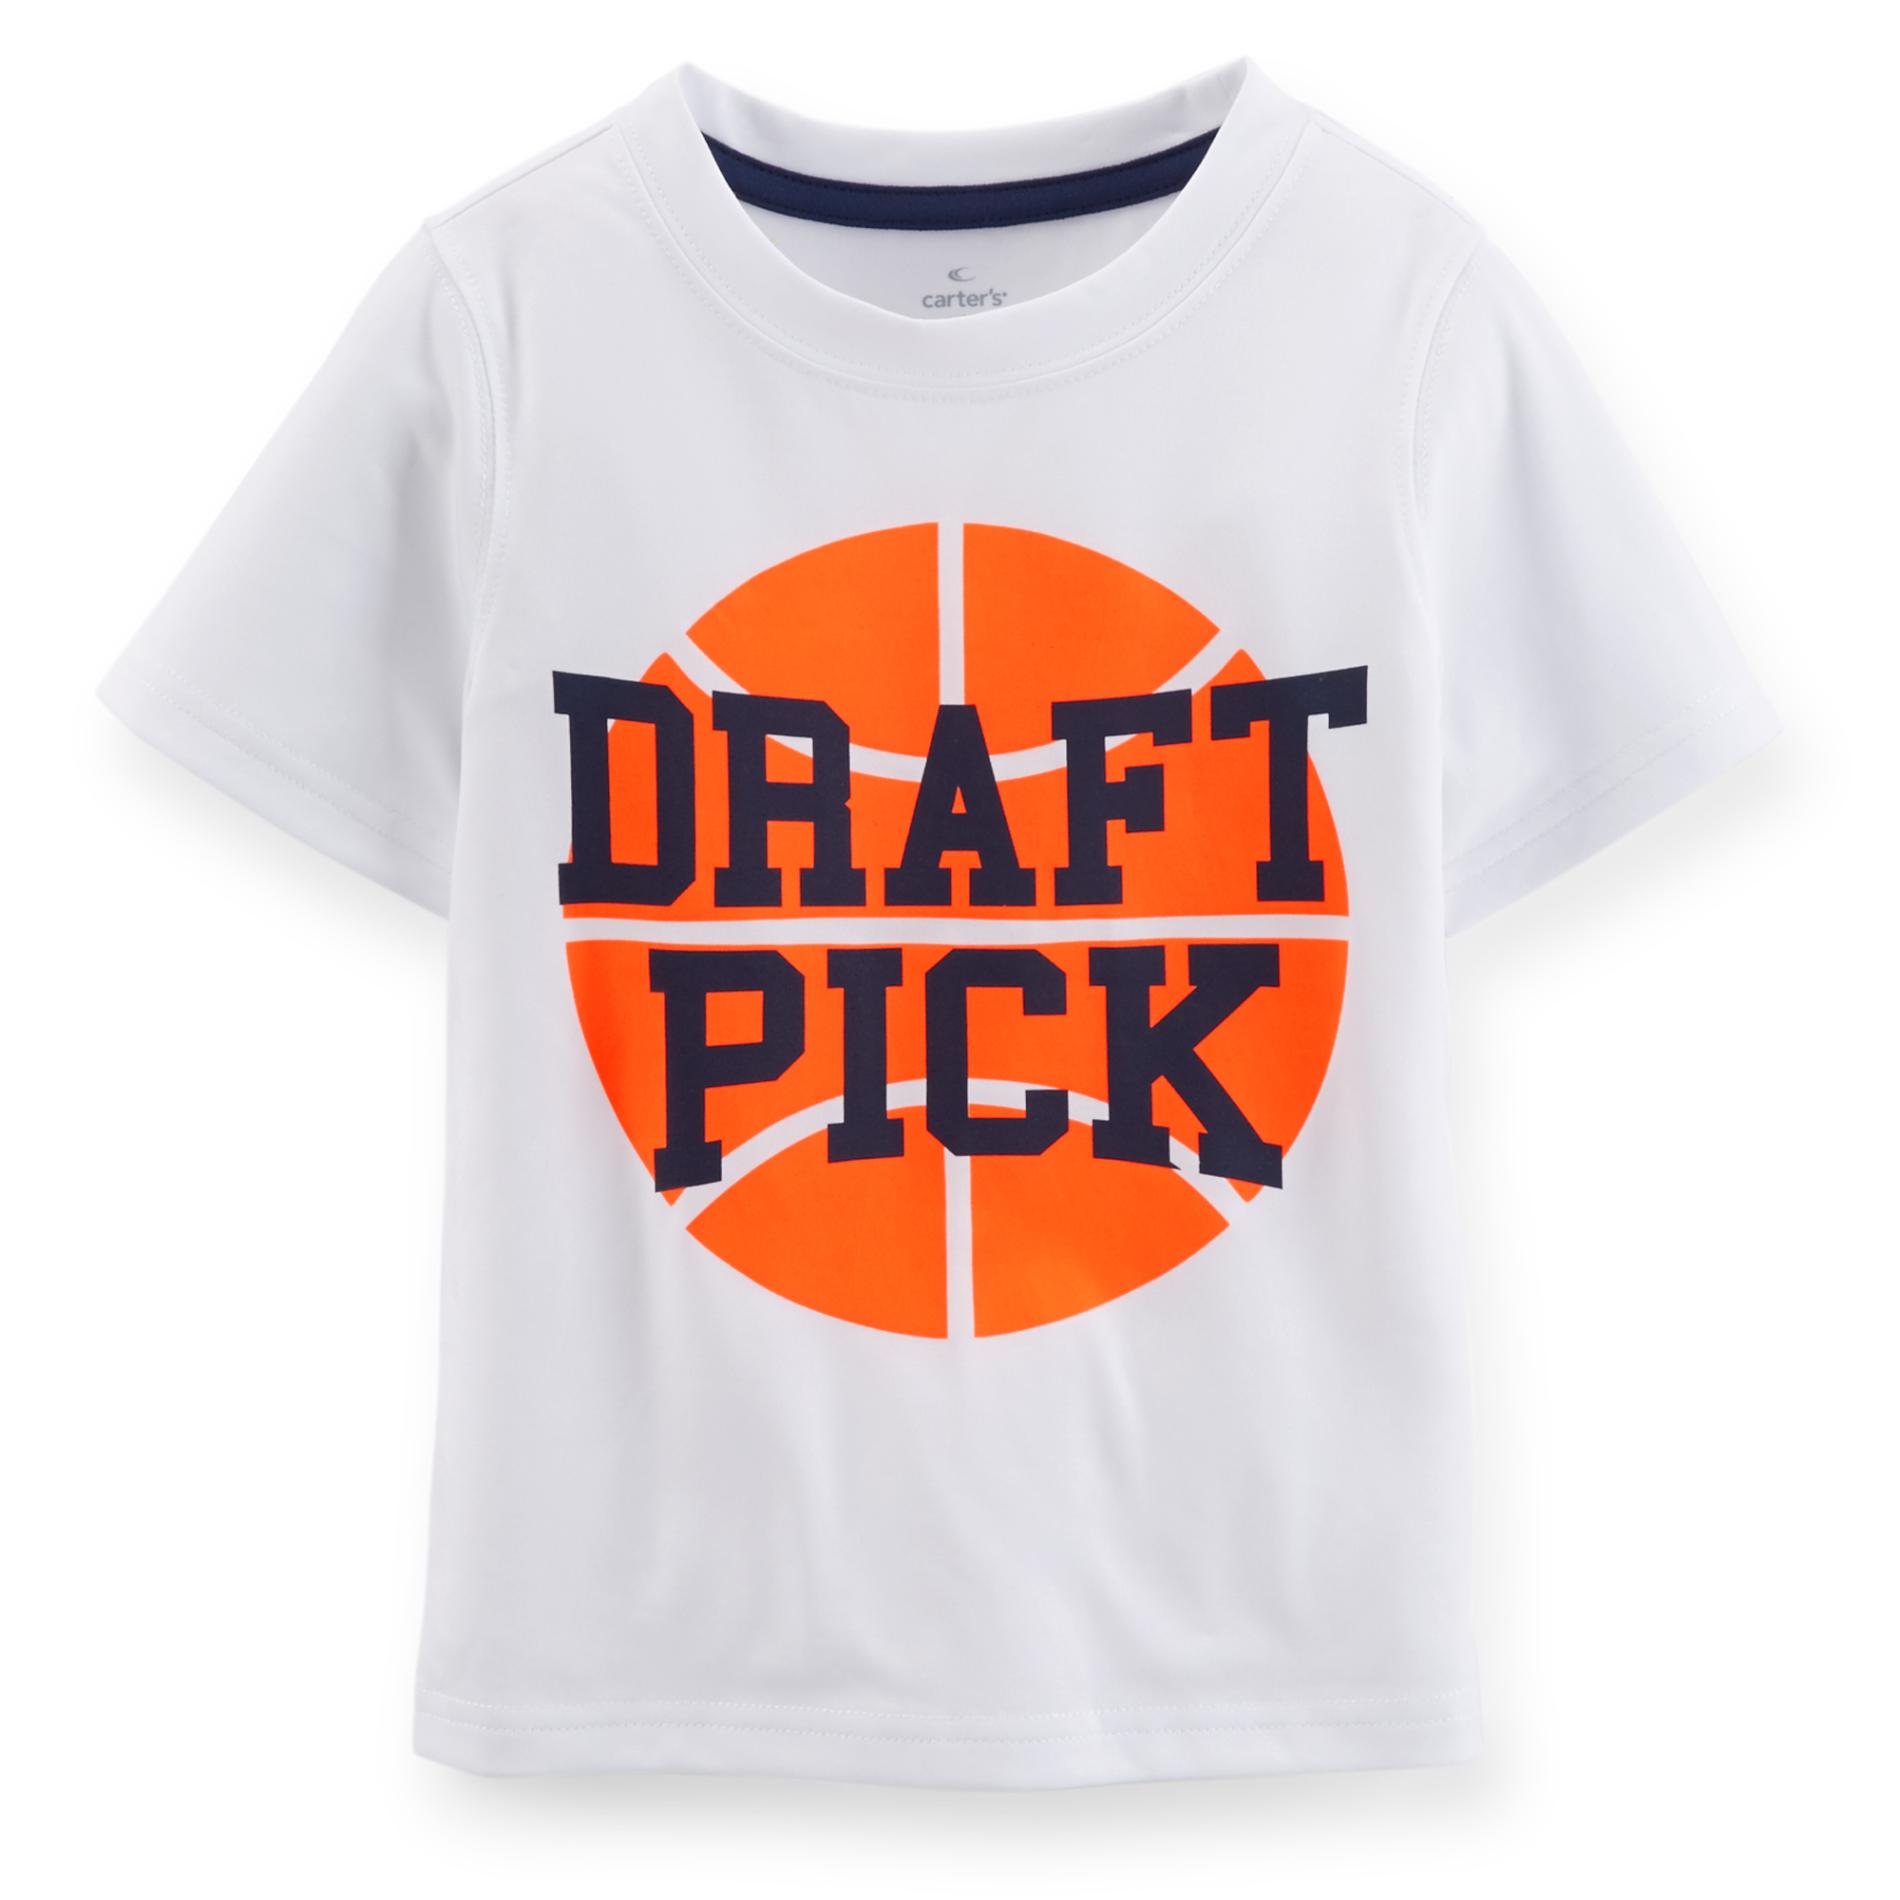 Toddler Boy's Graphic T-Shirt - Draft Pick